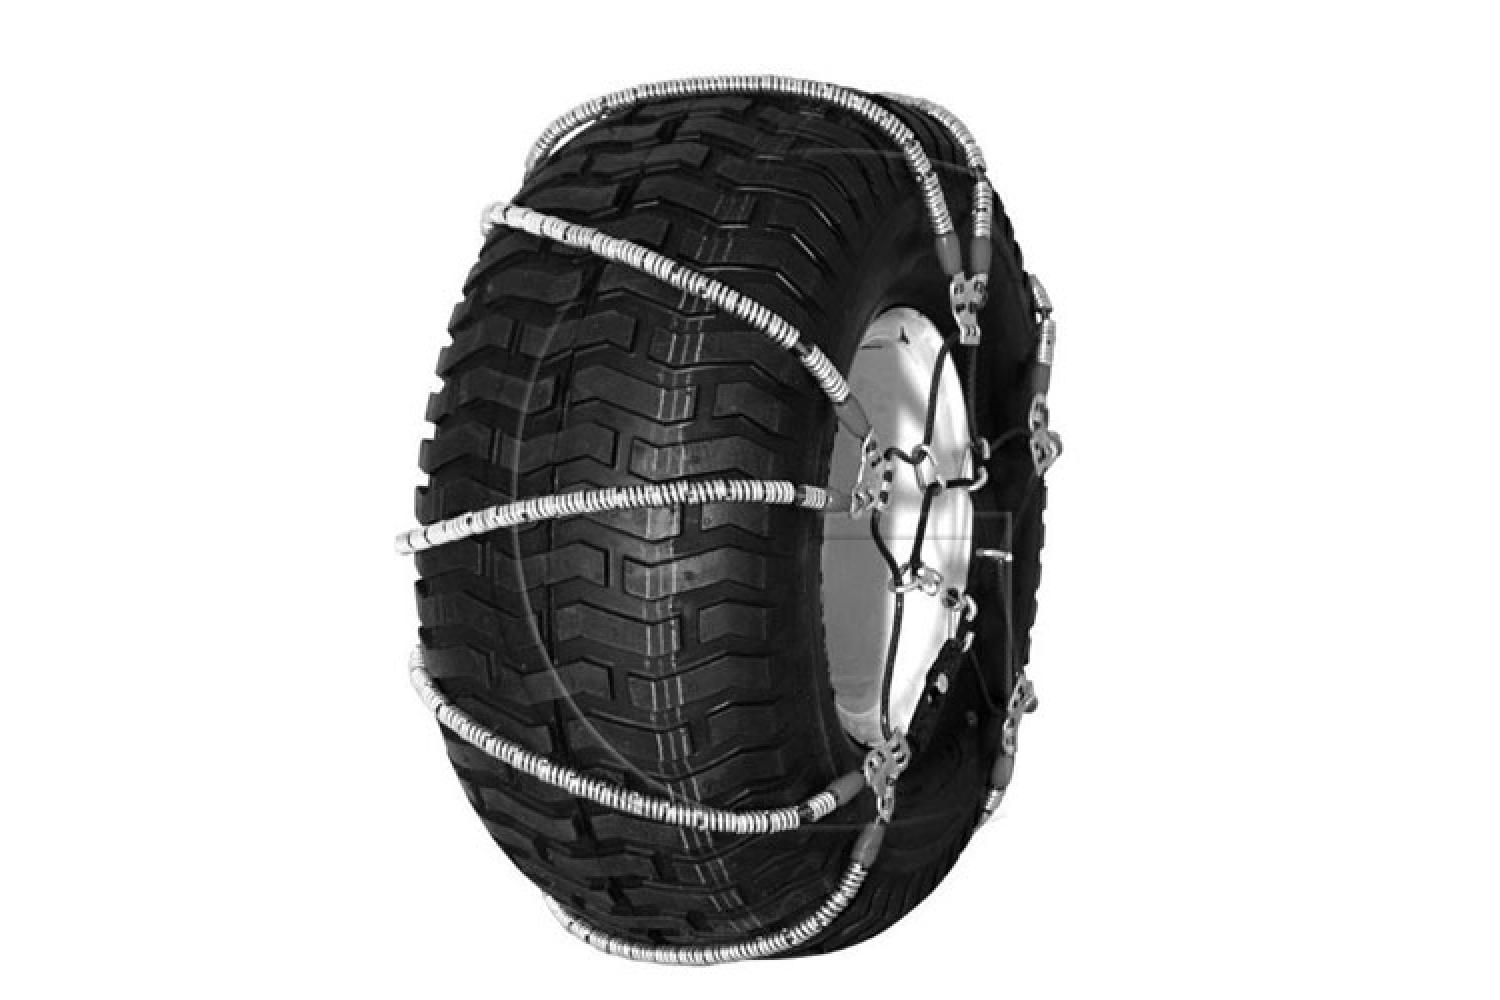 2er-Set Schneekette für Reifen = 18 x 9.50 - 8 - für Reifen 18 x 9.50 - 8 -  Seilformkette - für begrenzten Platz zwischen Reifen und Chassis